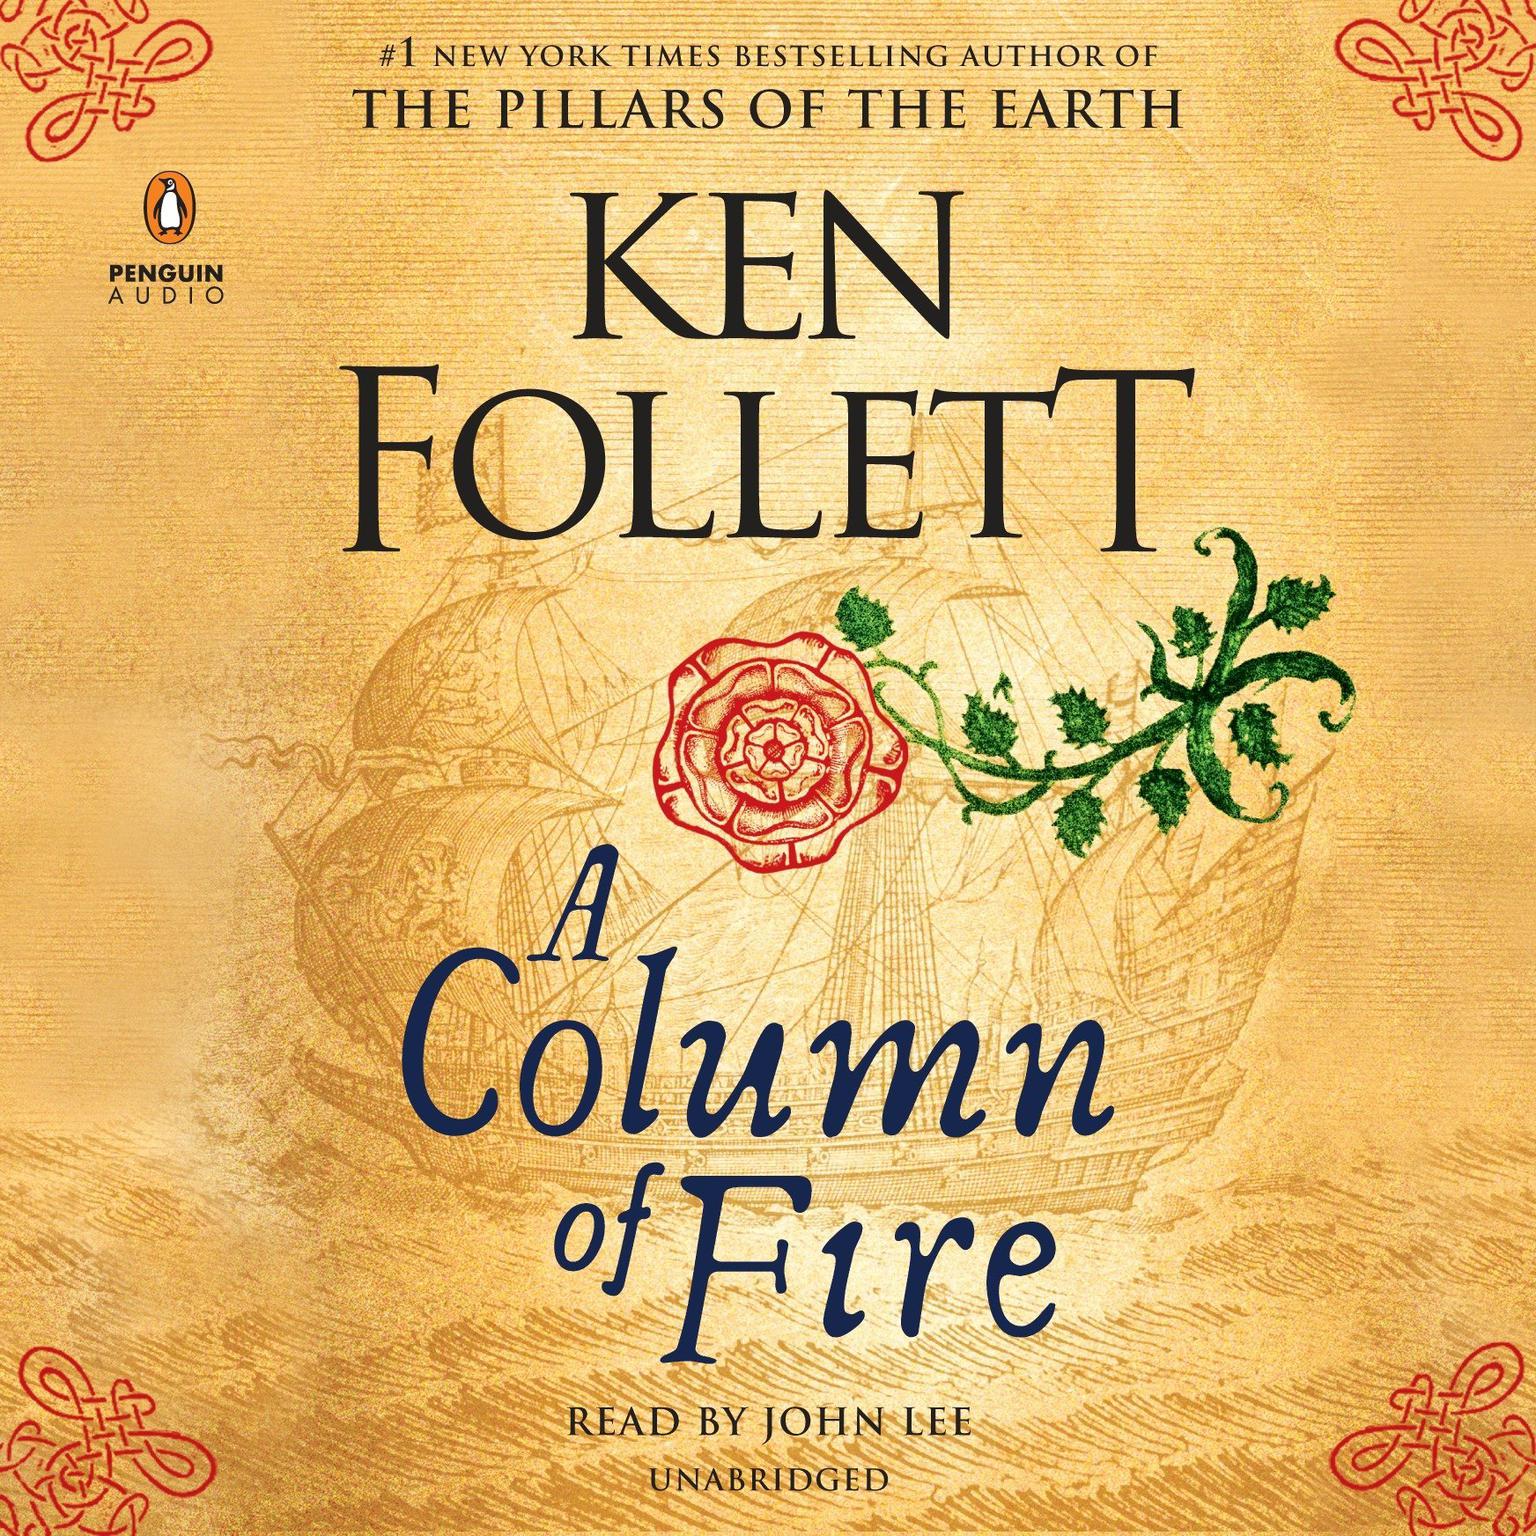 A Column of Fire Audiobook, by Ken Follett